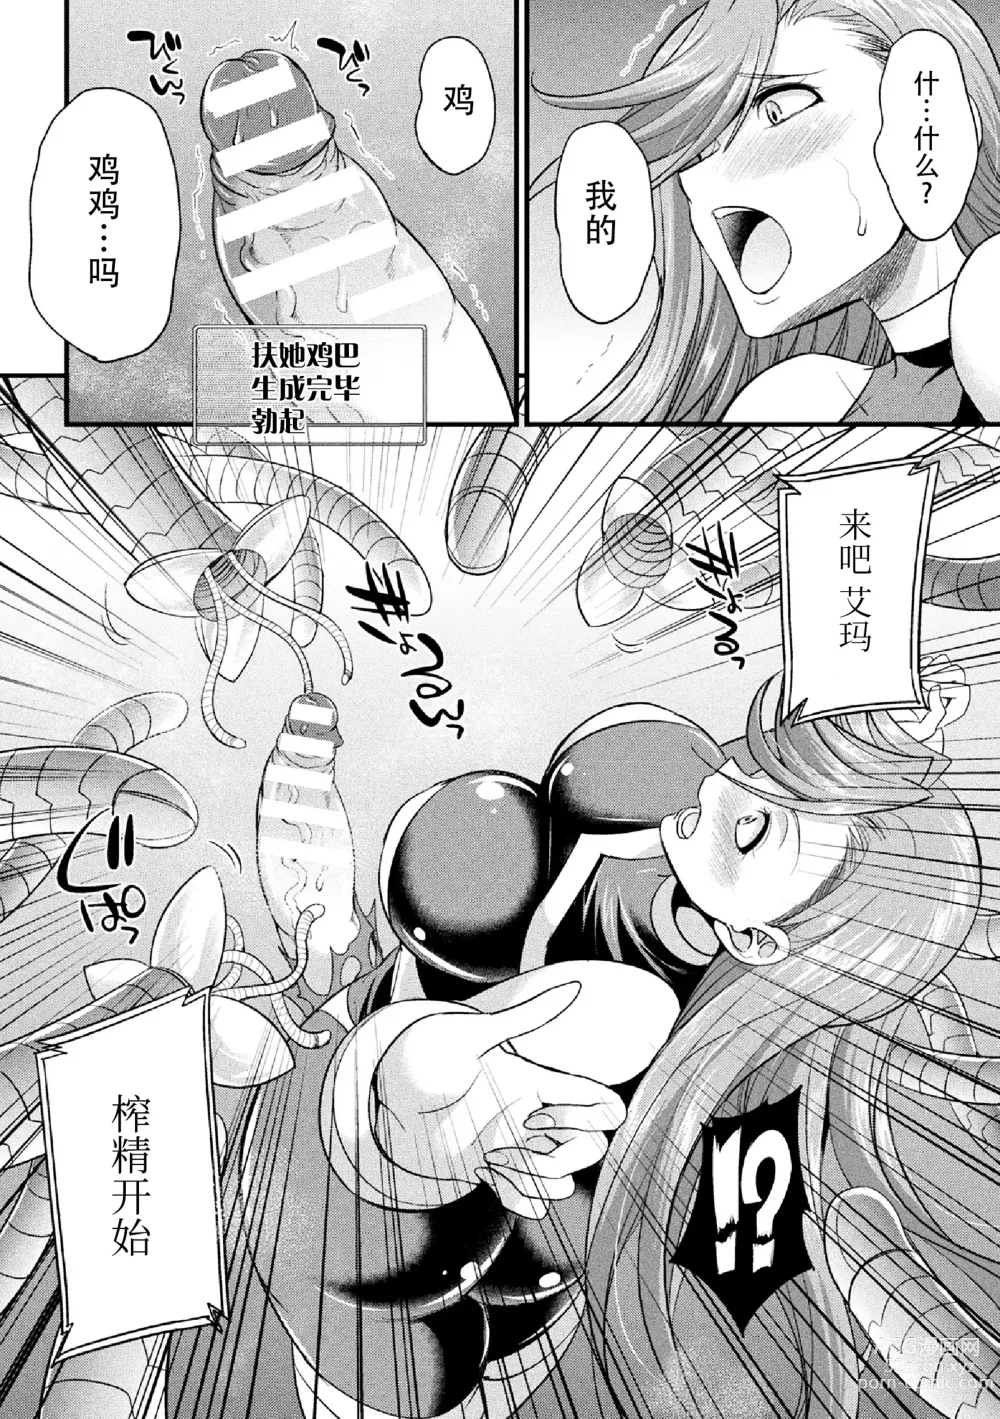 Page 8 of manga Ikusa Otome no Seisen ~Tsuika Status Futanari